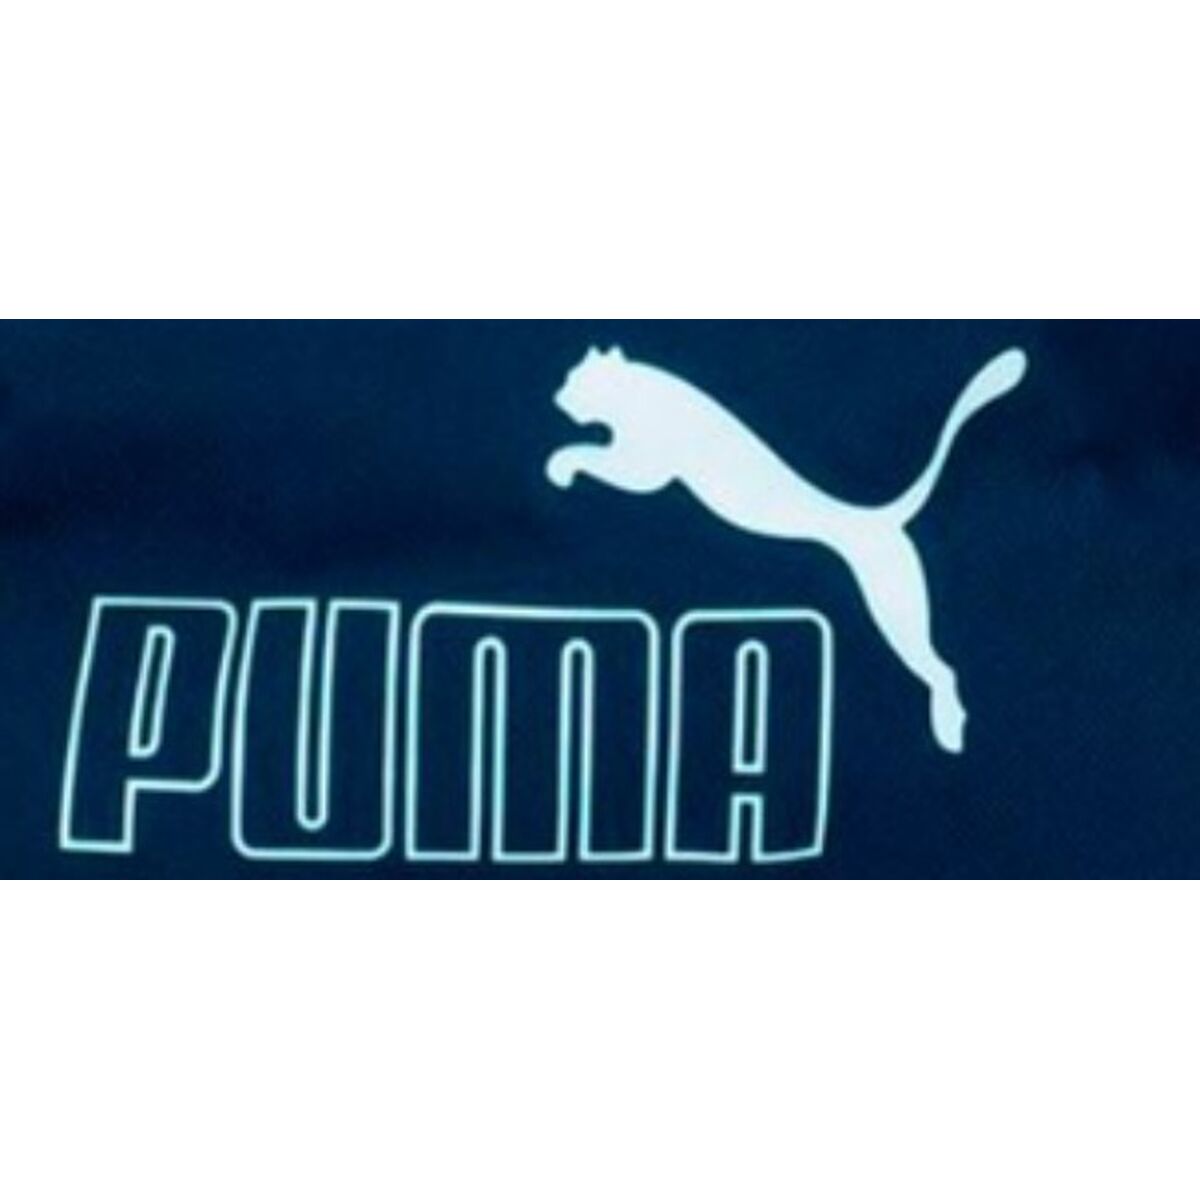 Belt Pouch Puma Core Waist Blue